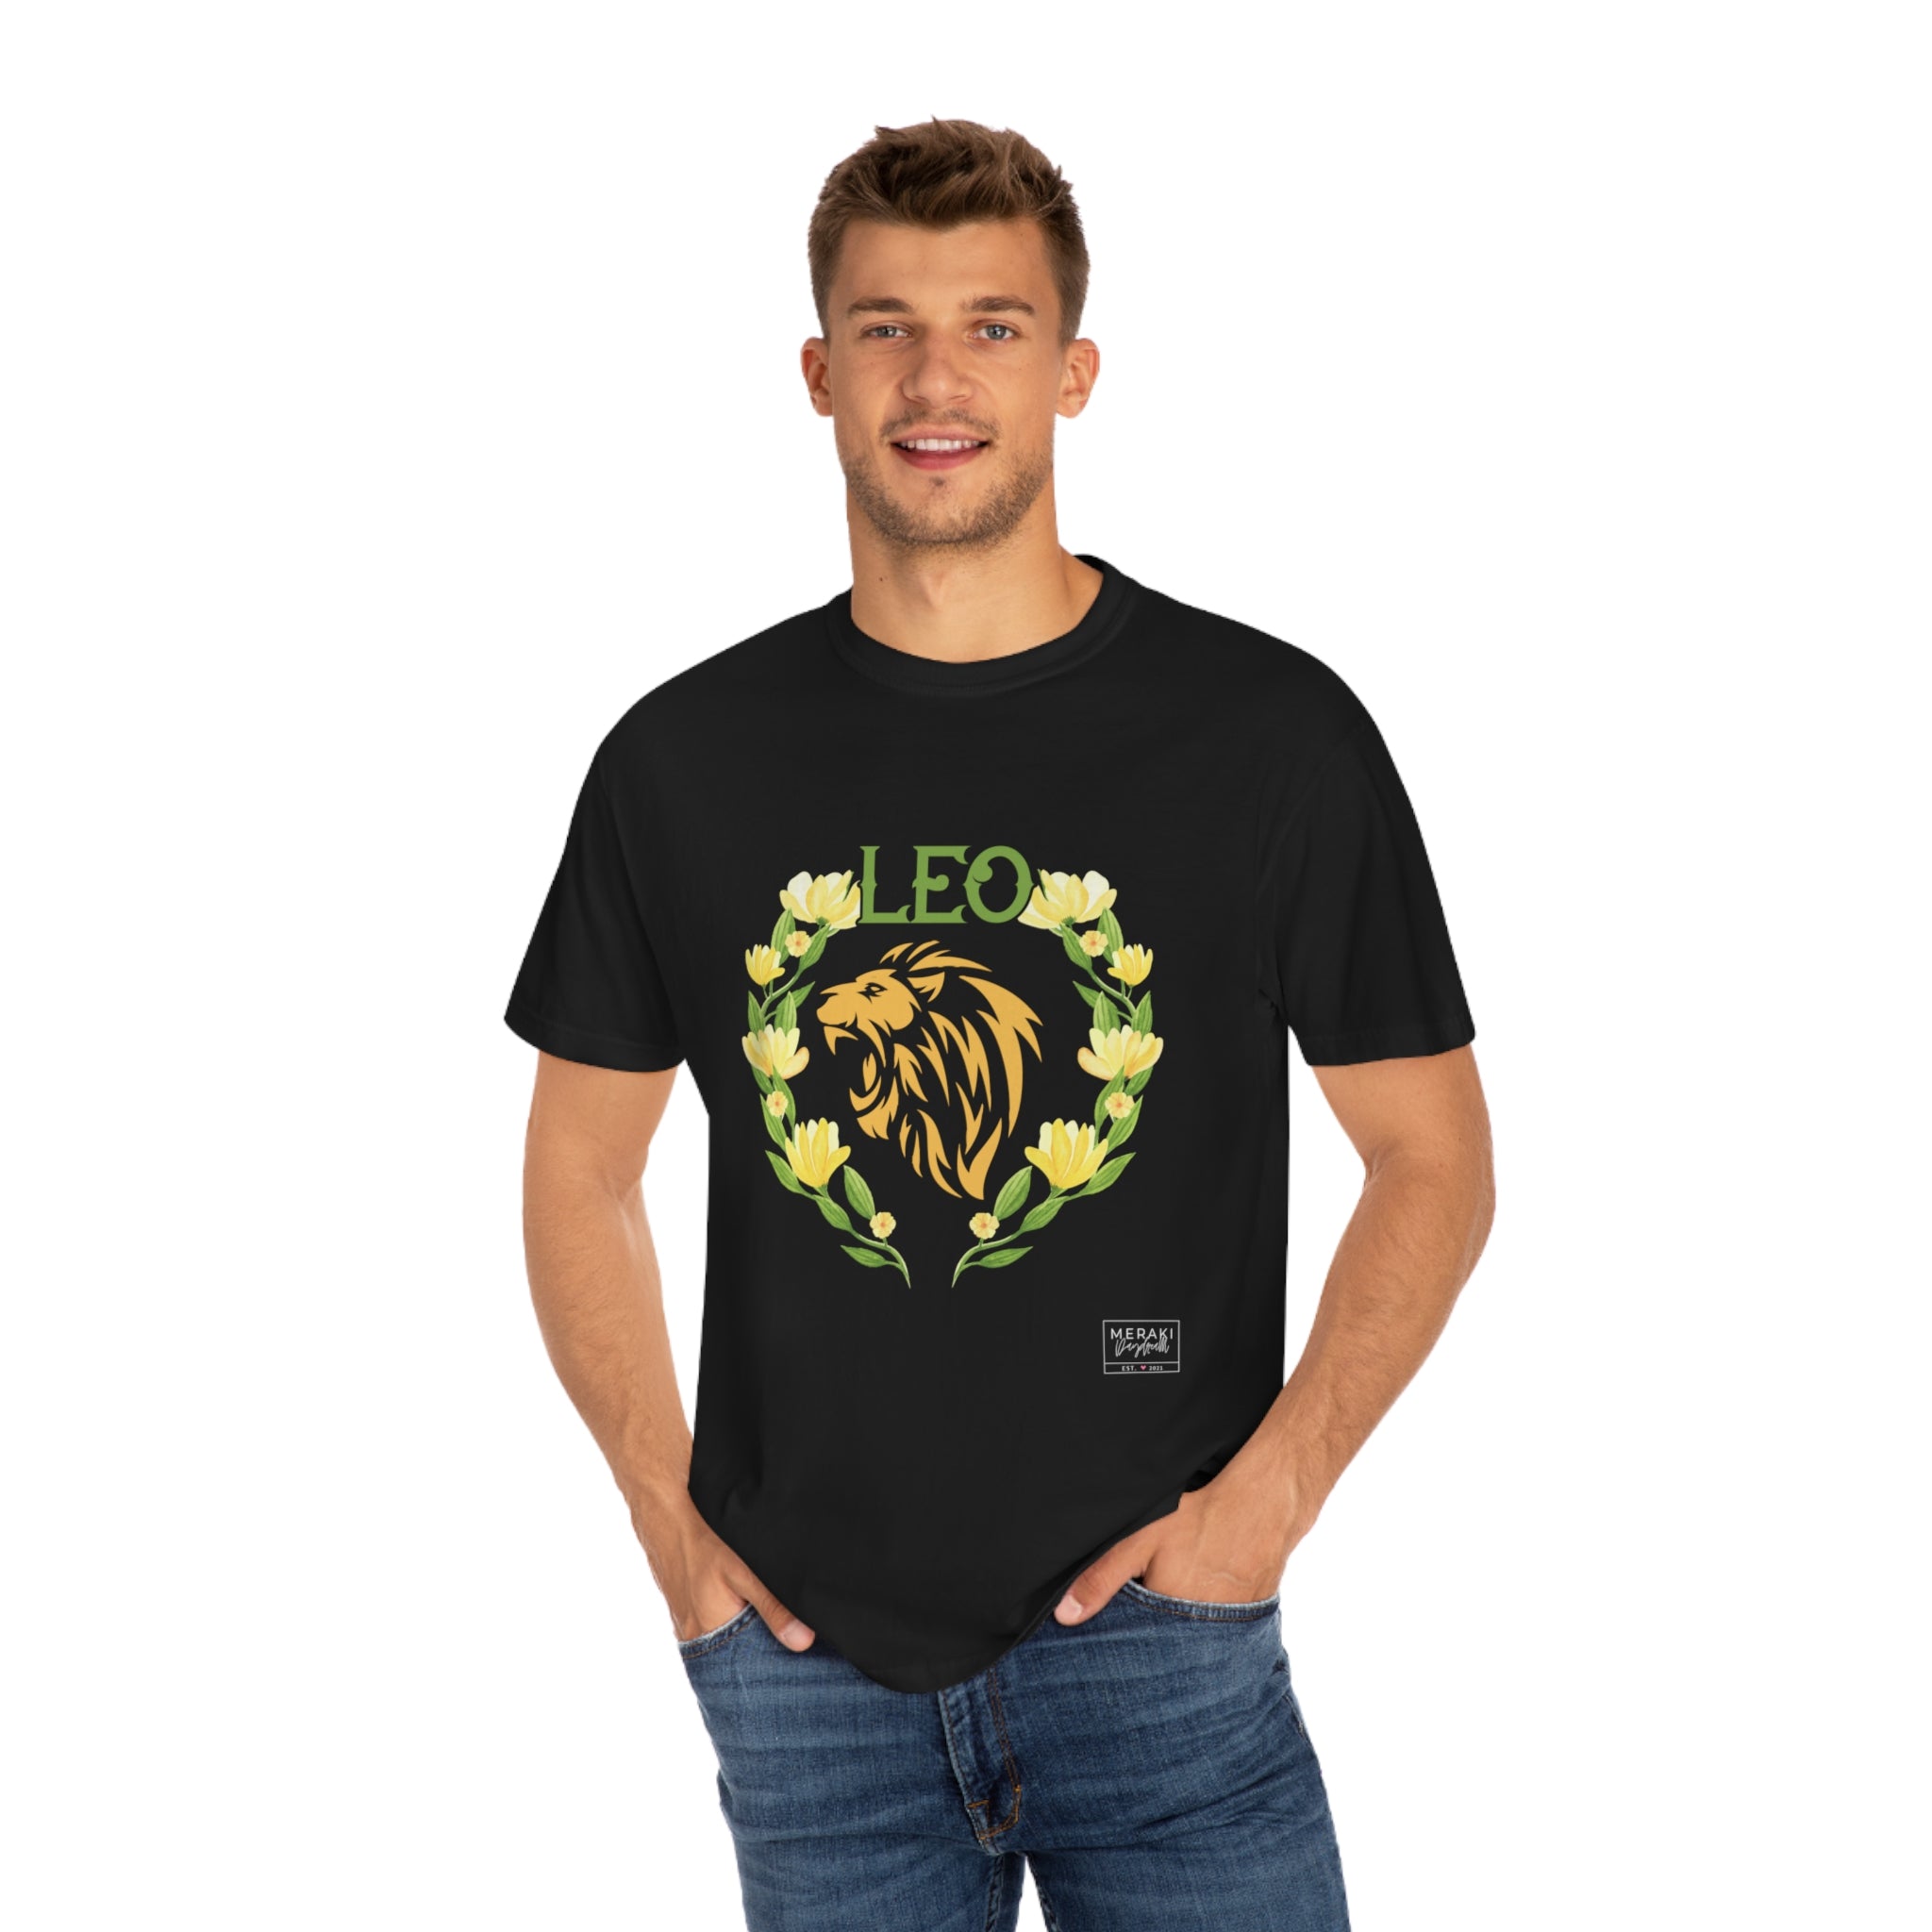 Unisex Leo Zodiac Sign T-Shirt